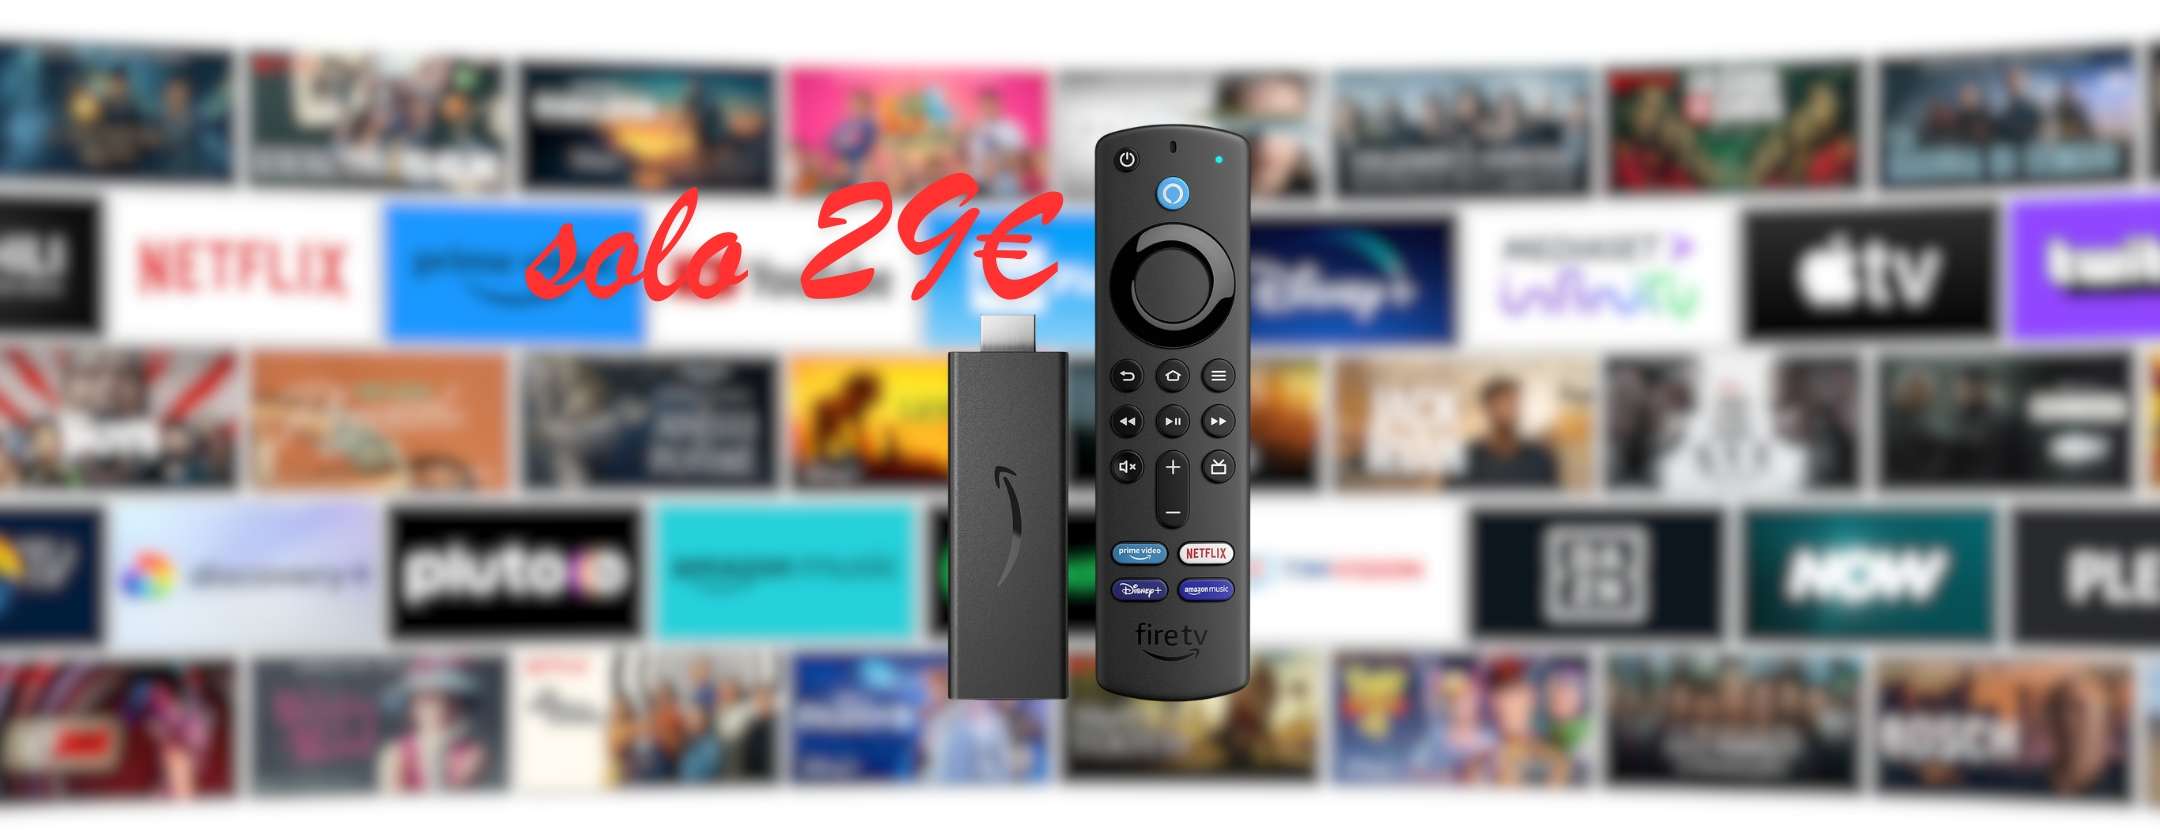 Fire TV Stick + Telecomando Alexa: solo 29€ su